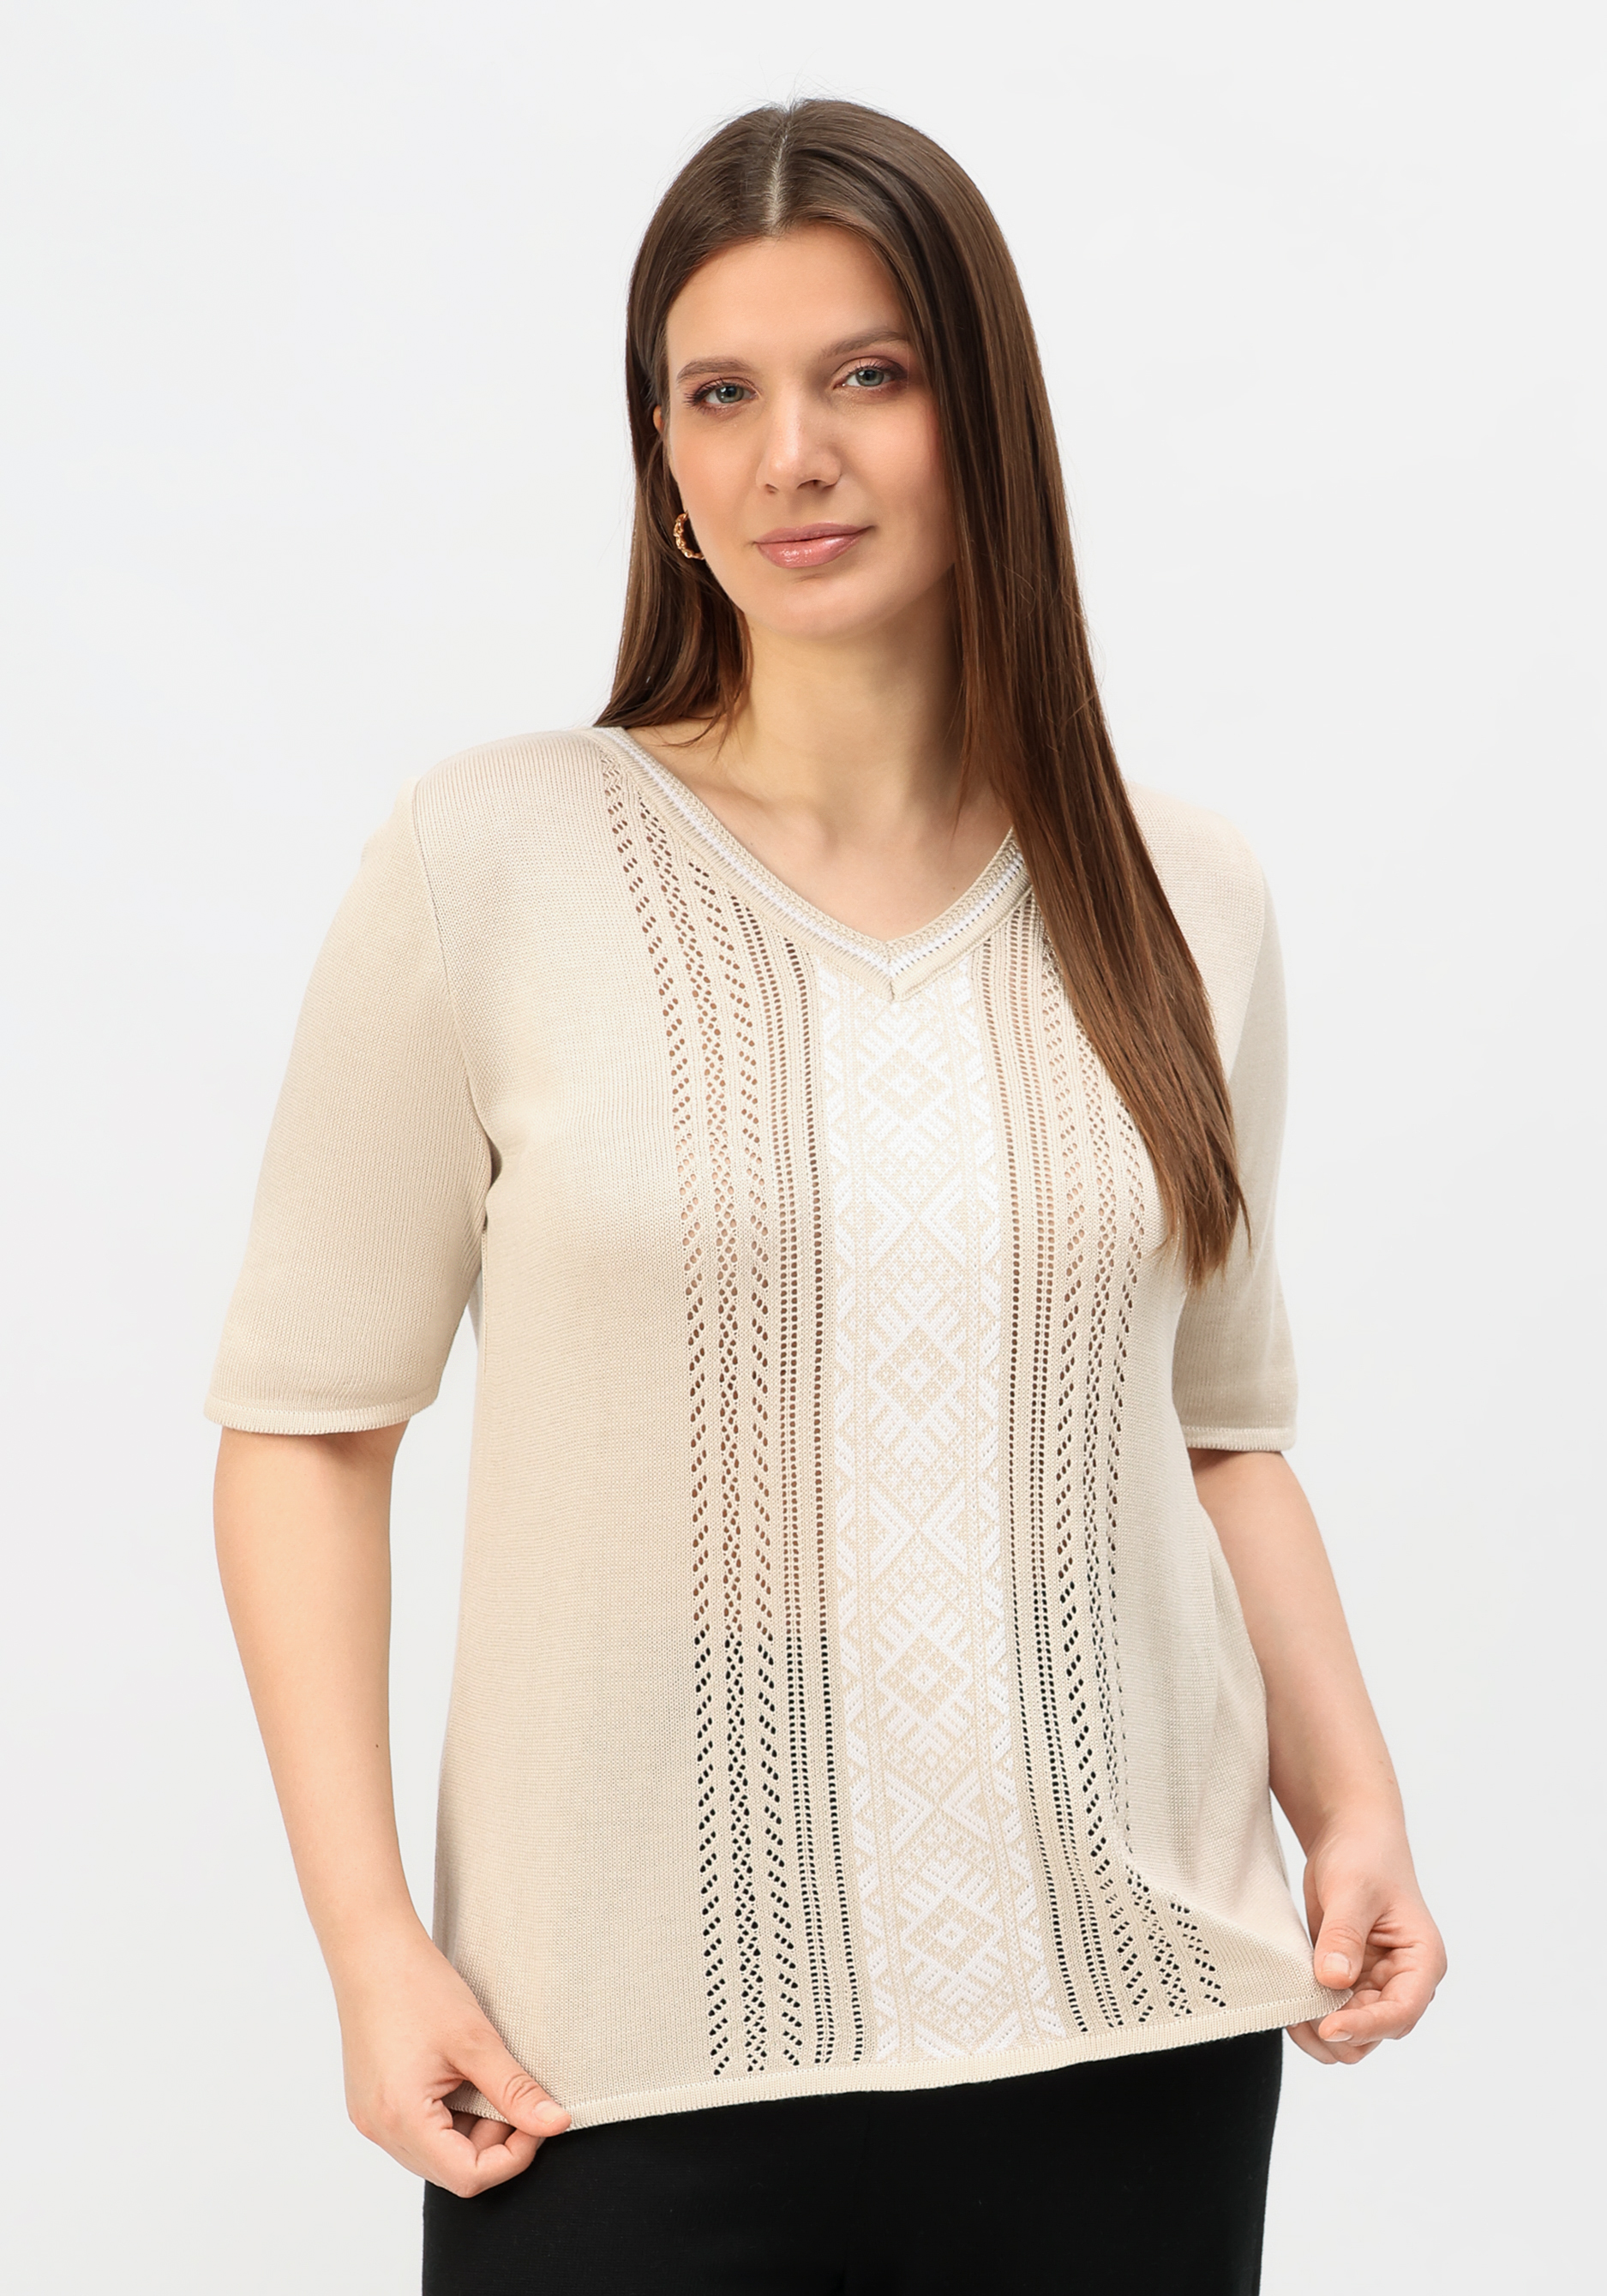 Пуловер с узором на передней полочке Vivawool, размер 48, цвет серый